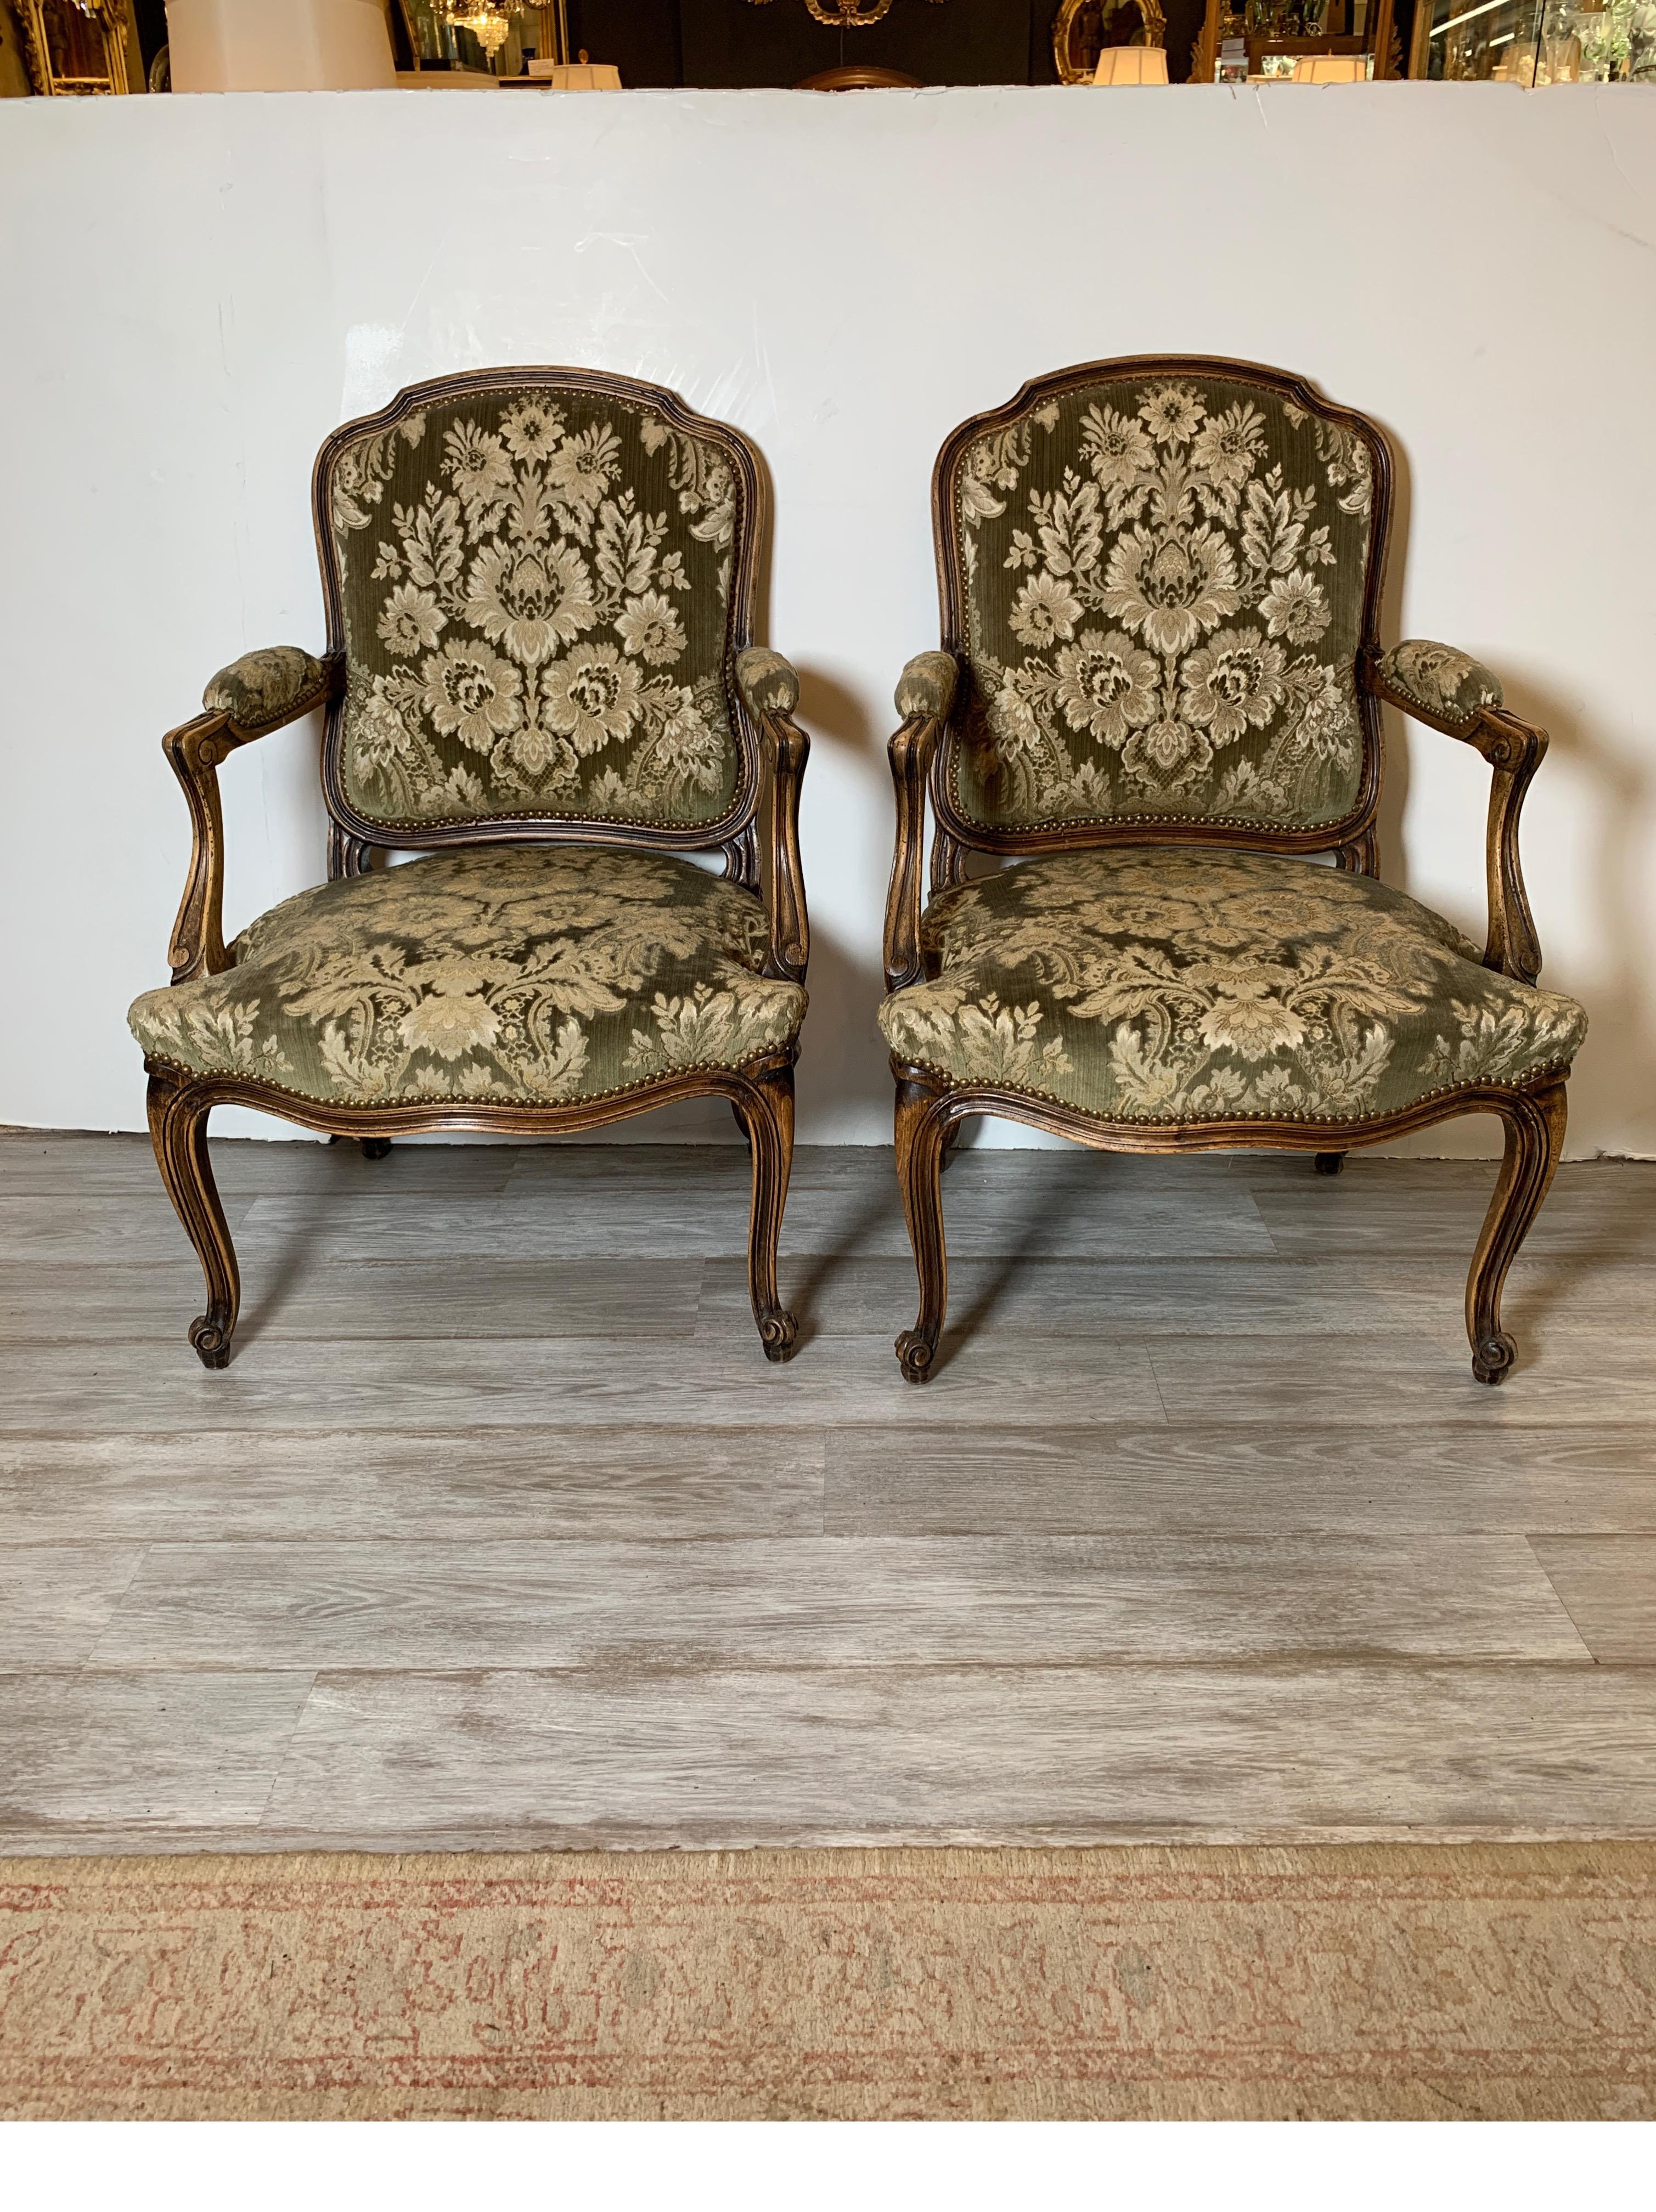 Ein Paar französische geschnitzte Fauteuils-Stühle mit italienischem Samtdamastbezug. Der salbeigrüne Samt mit zartem Golddamast ist mit Messingnägeln verziert. Der Holzrahmen hat eine natürliche, abgenutzte Oberfläche. Die Sitze sind mit einer